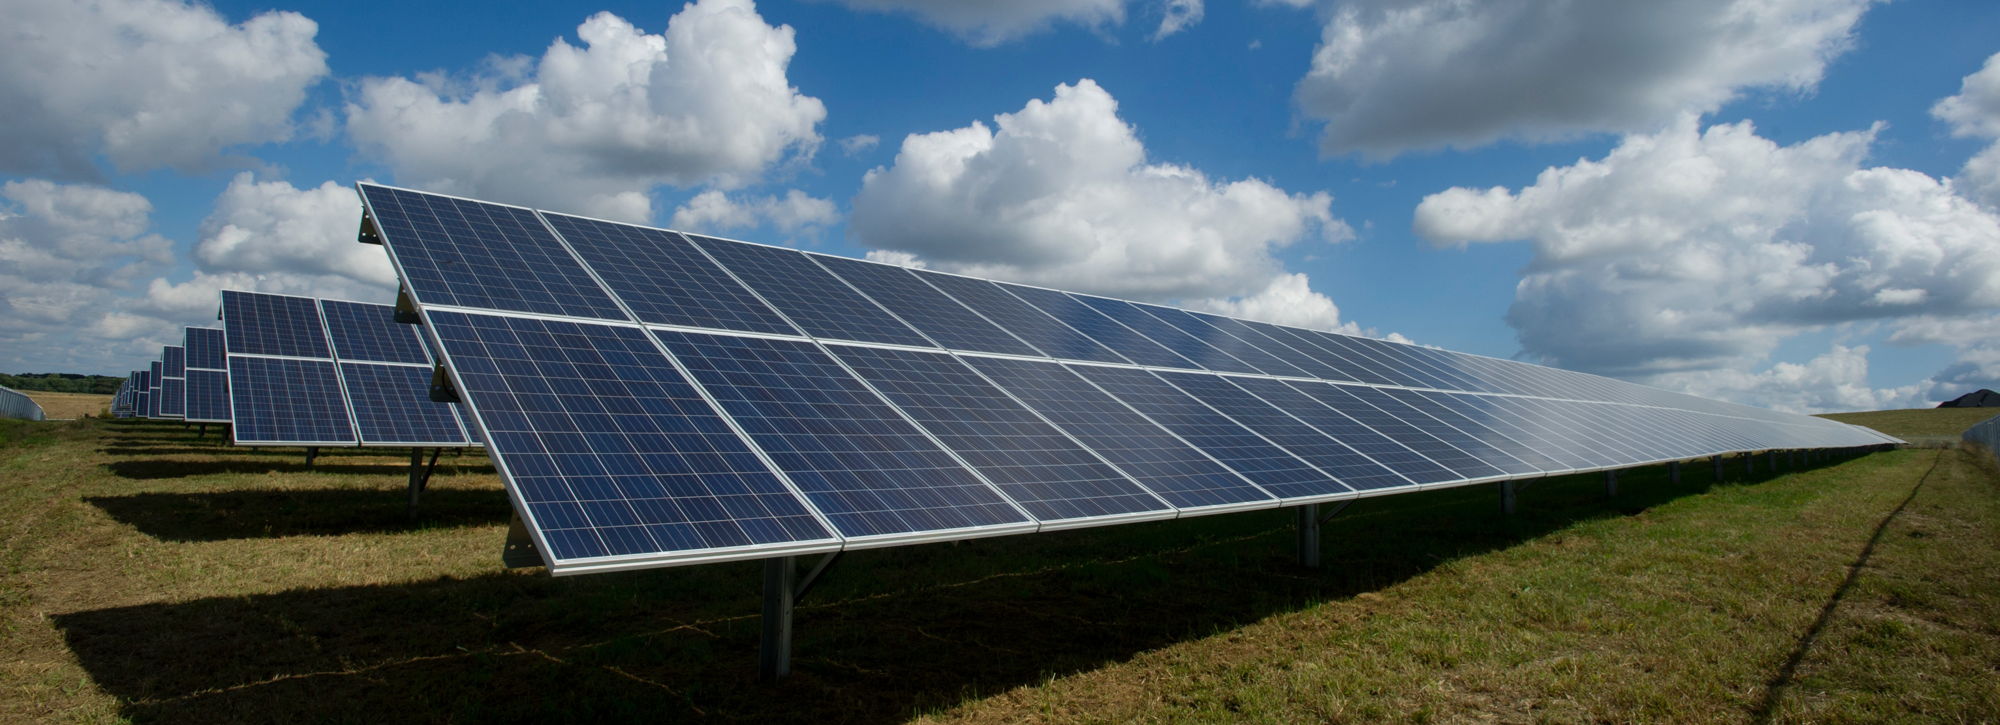 Photovoltaik Feld - erneuerbare Energien nutzbar machen mit Max Doser aus Füssen